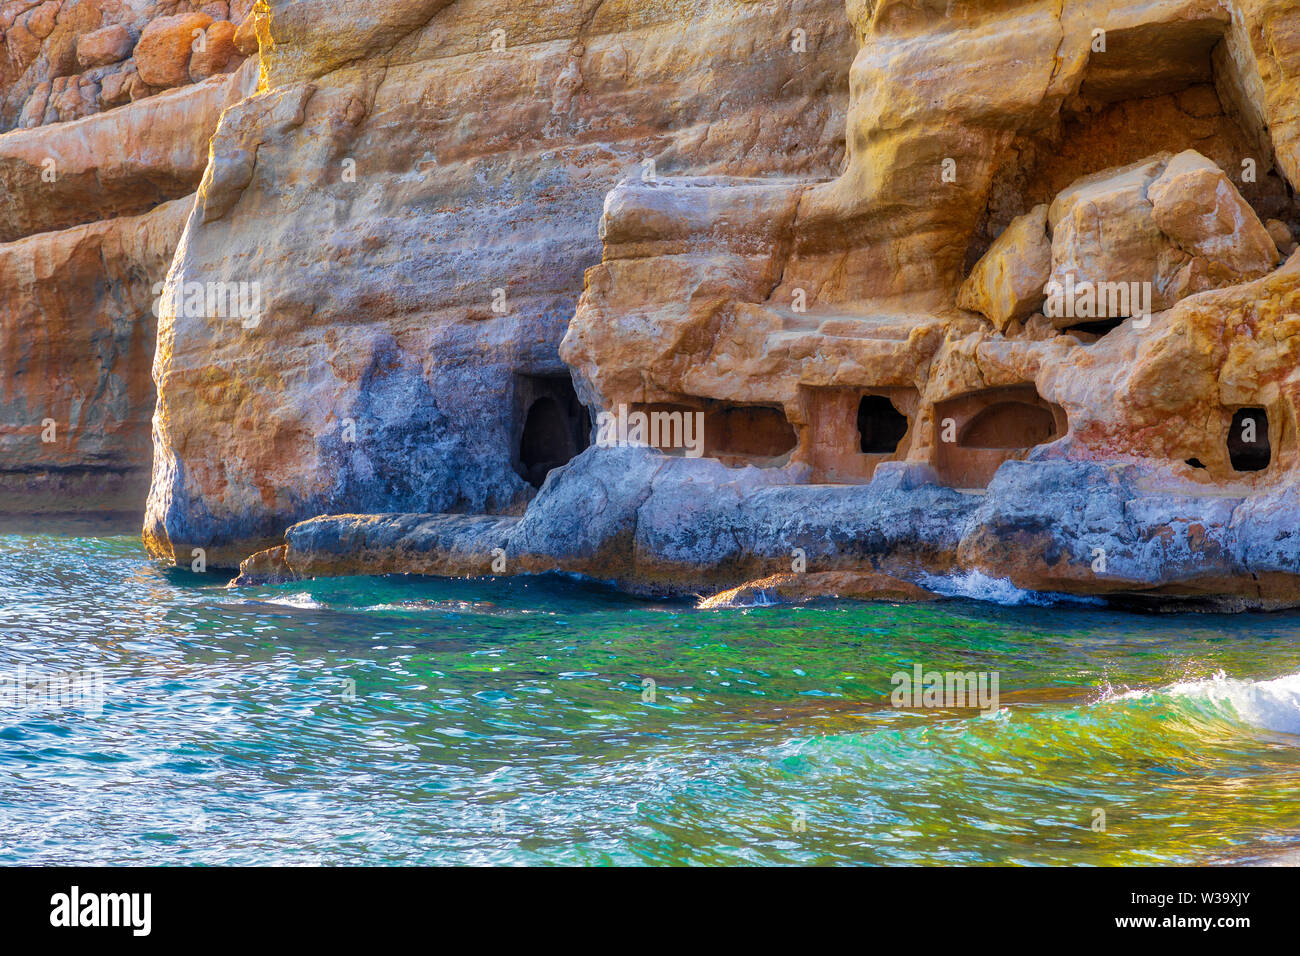 La plage de Matala cliff avec des grottes, l'île de Crète, Grèce Banque D'Images